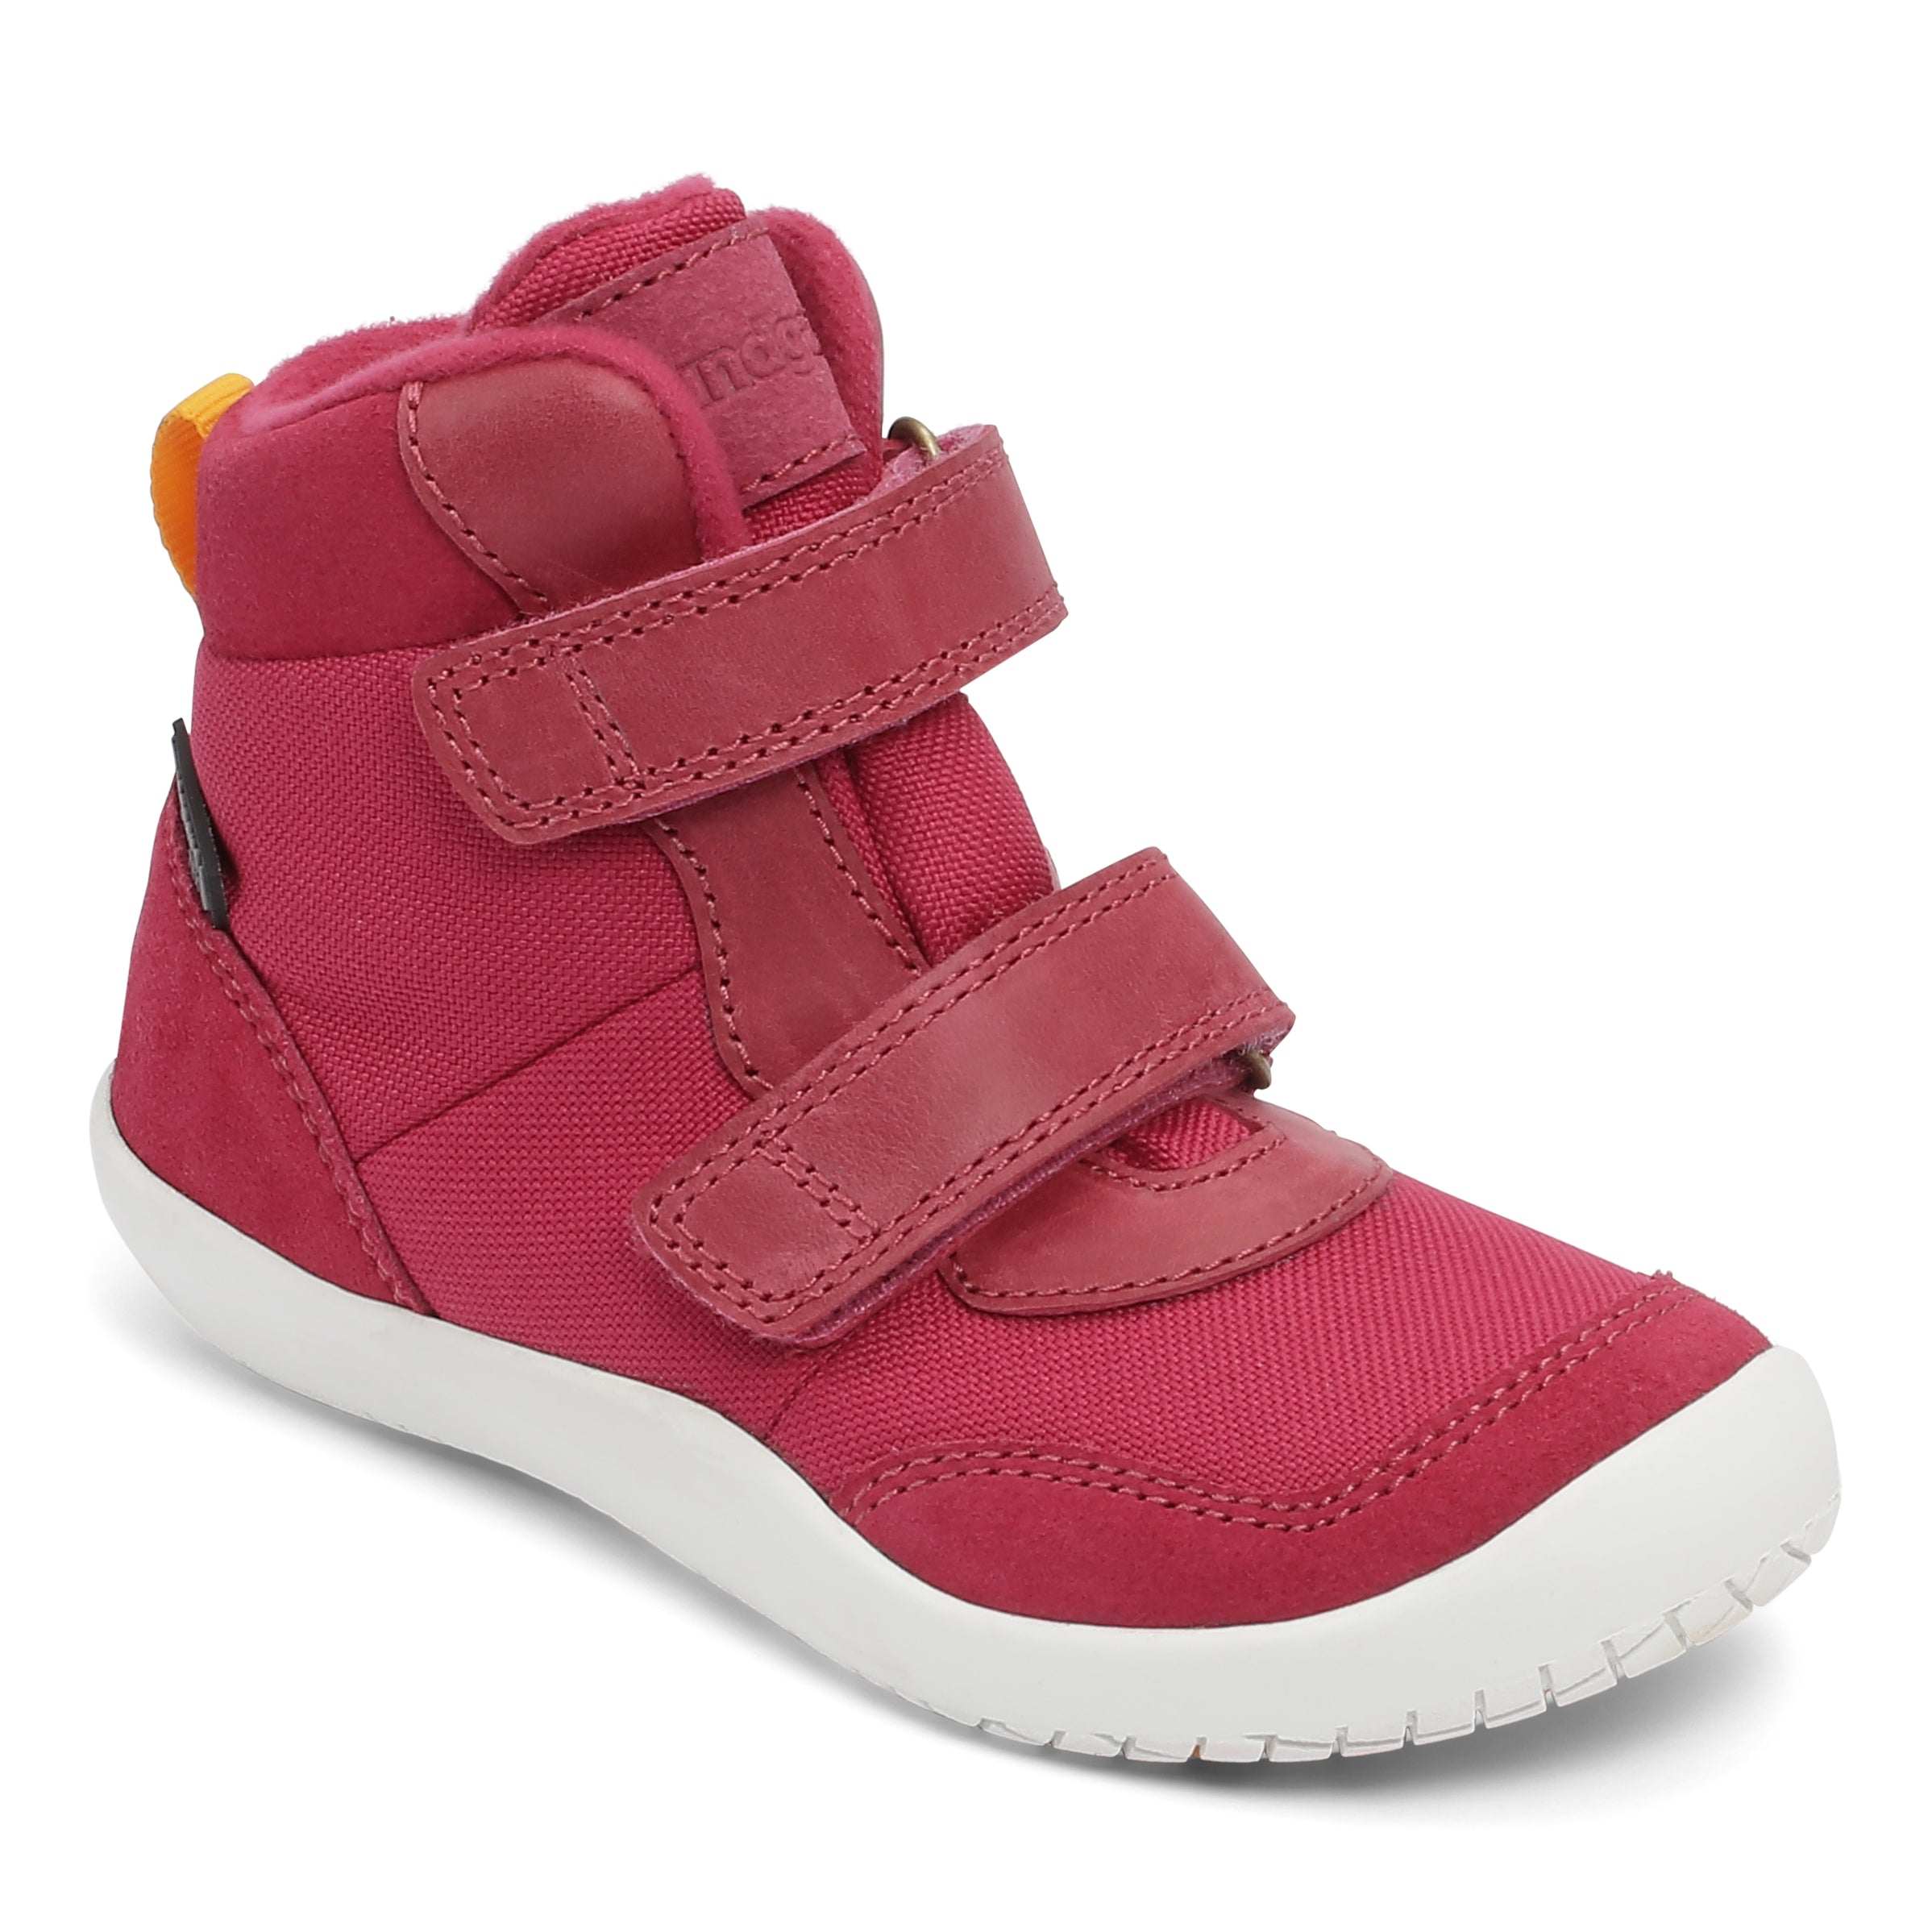 Bundgaard Birk barfods vinterstøvler til børn i farven dark pink, vinklet